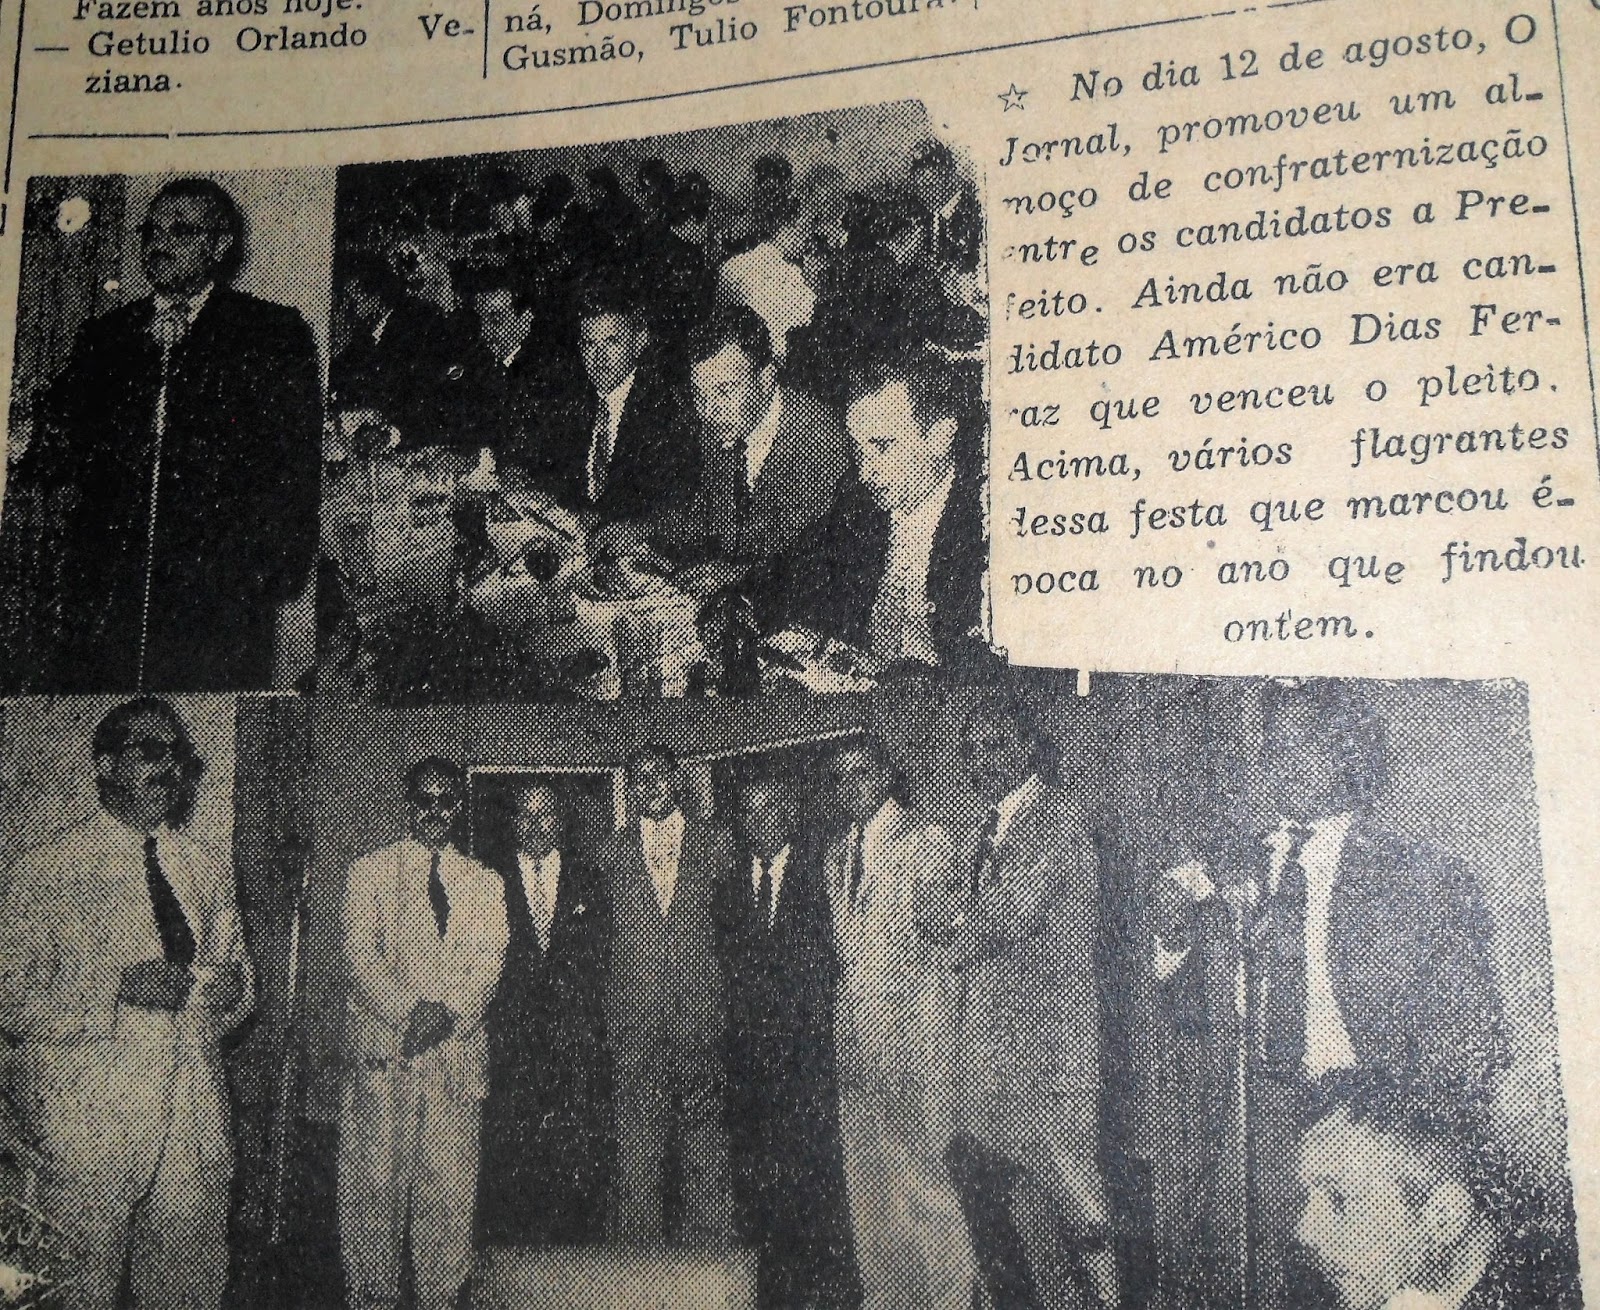 Almoço com candidatos - 1956